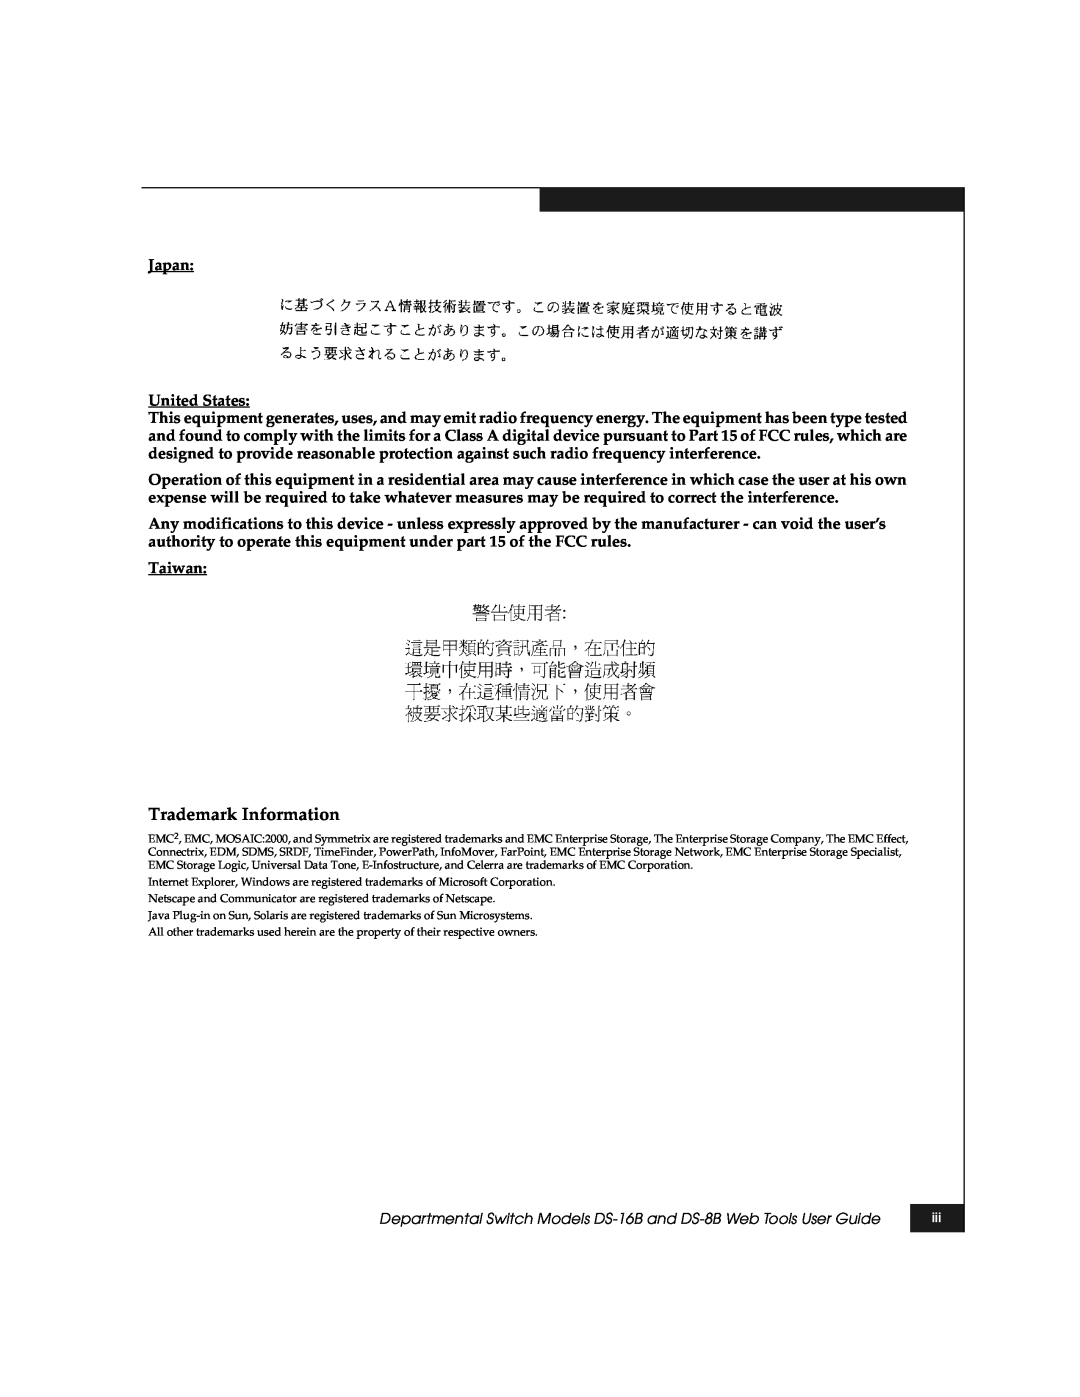 EMC DS-8B manual Trademark Information 